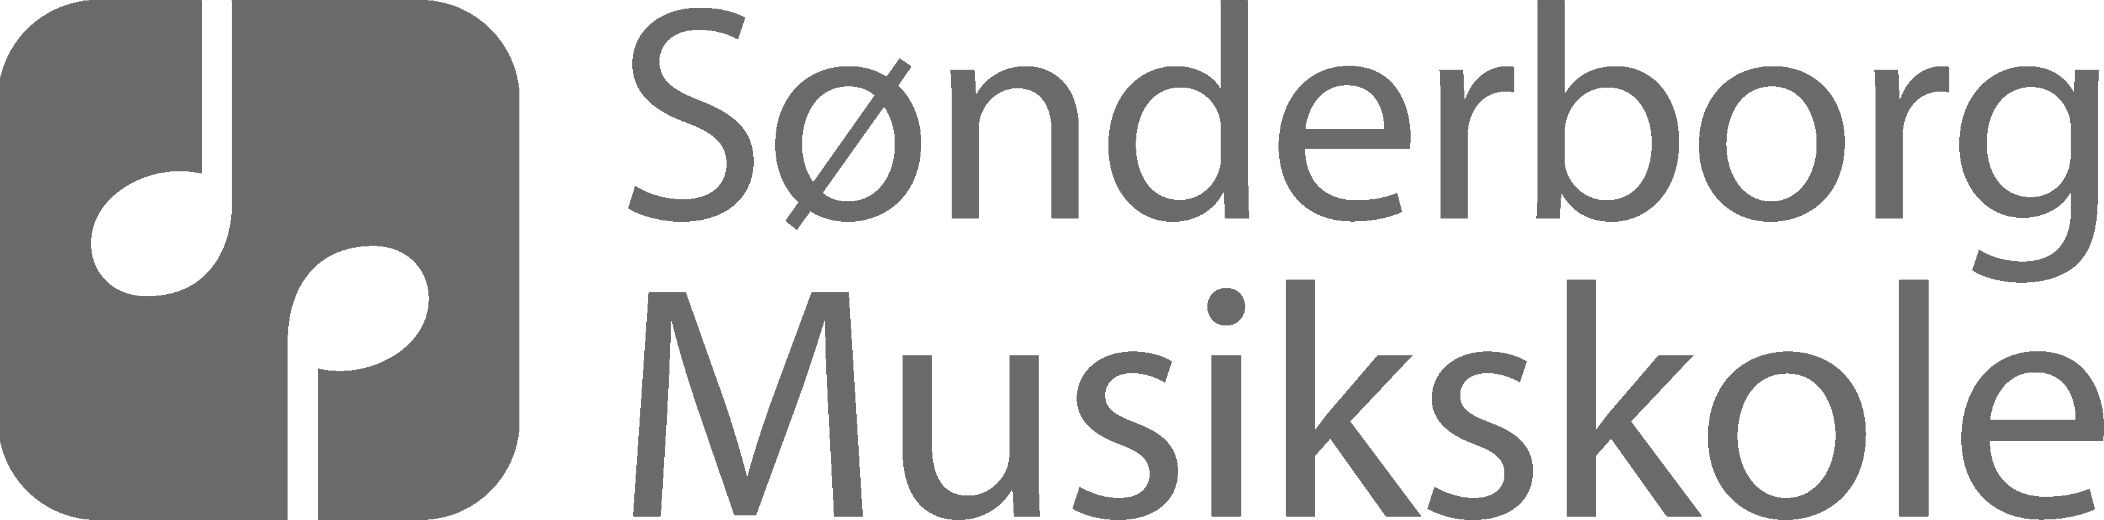 Sønderborg Musikskole Logo